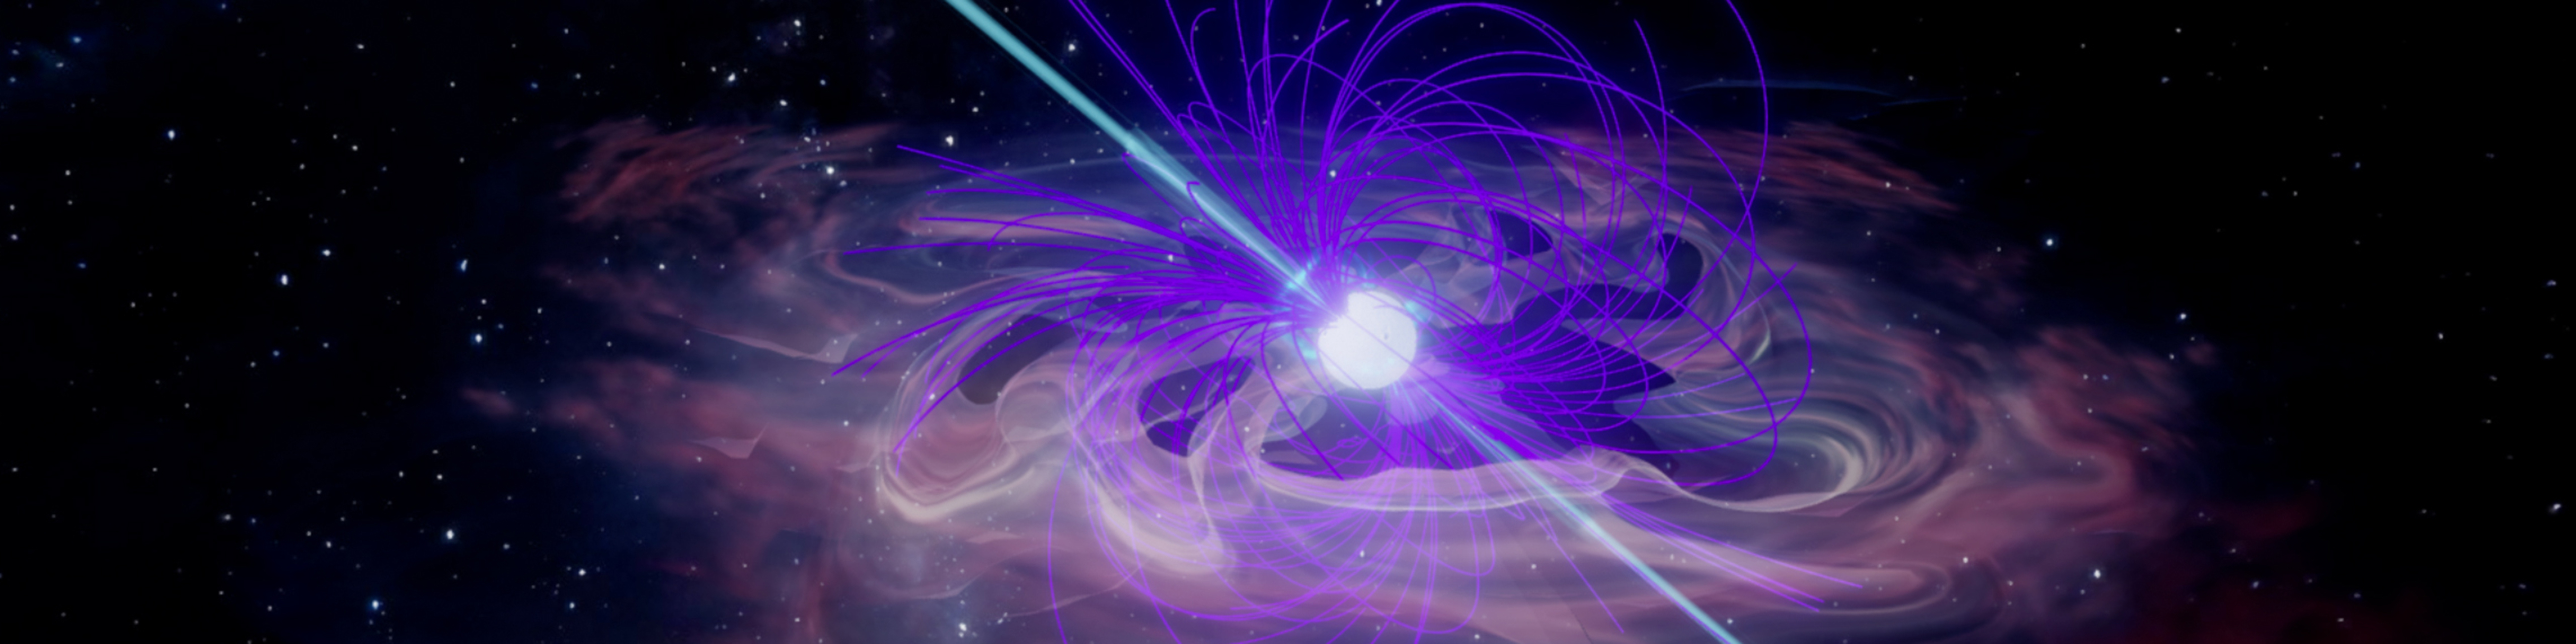 Artist rendering of a pulsar